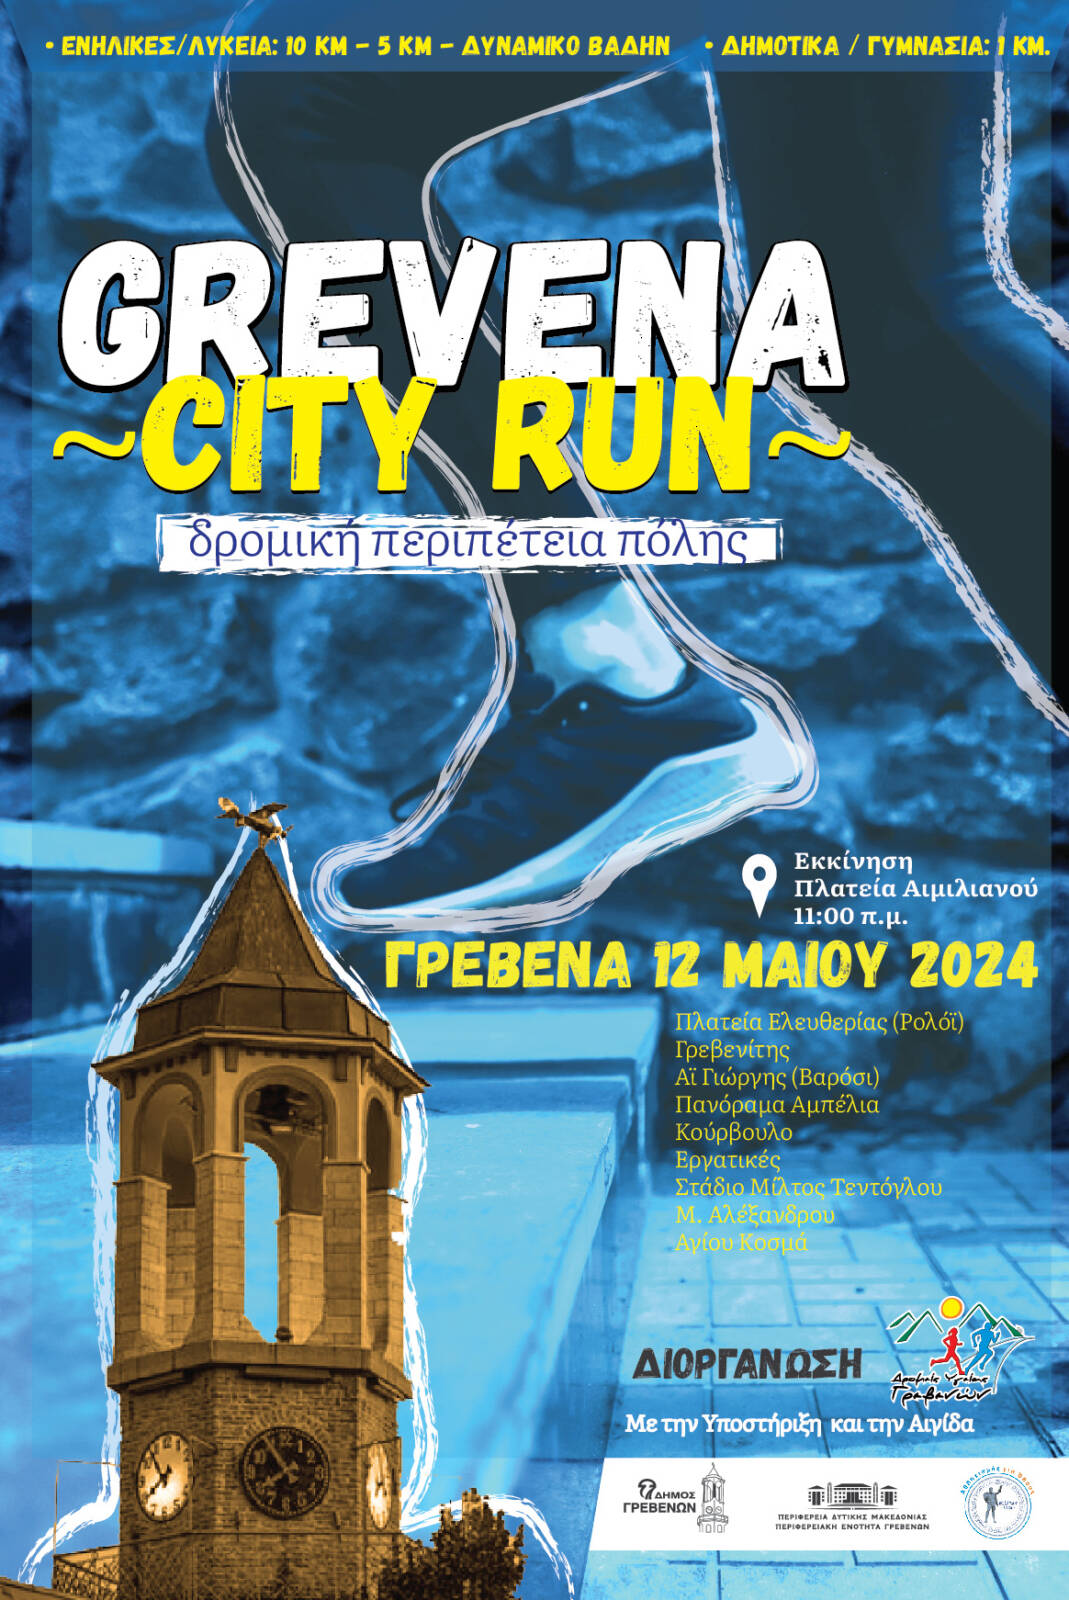 Παράταση εγγραφών Grevena City Run